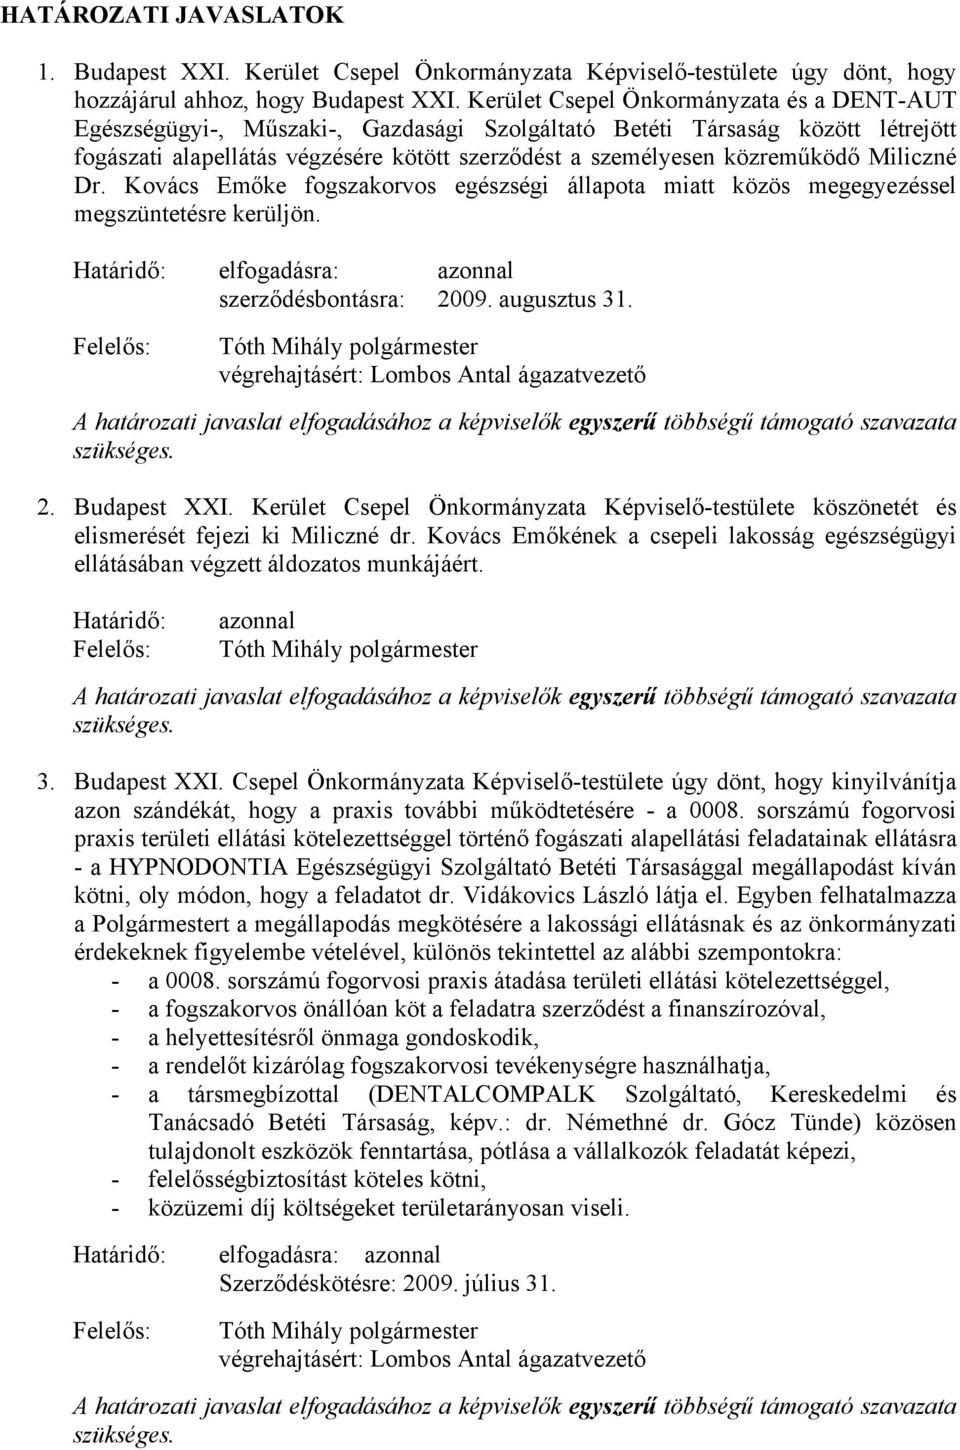 Miliczné Dr. Kovács Emőke fogszakorvos egészségi állapota miatt közös megegyezéssel megszüntetésre kerüljön. Határidő: elfogadásra: azonnal szerződésbontásra: 2009. augusztus 31.